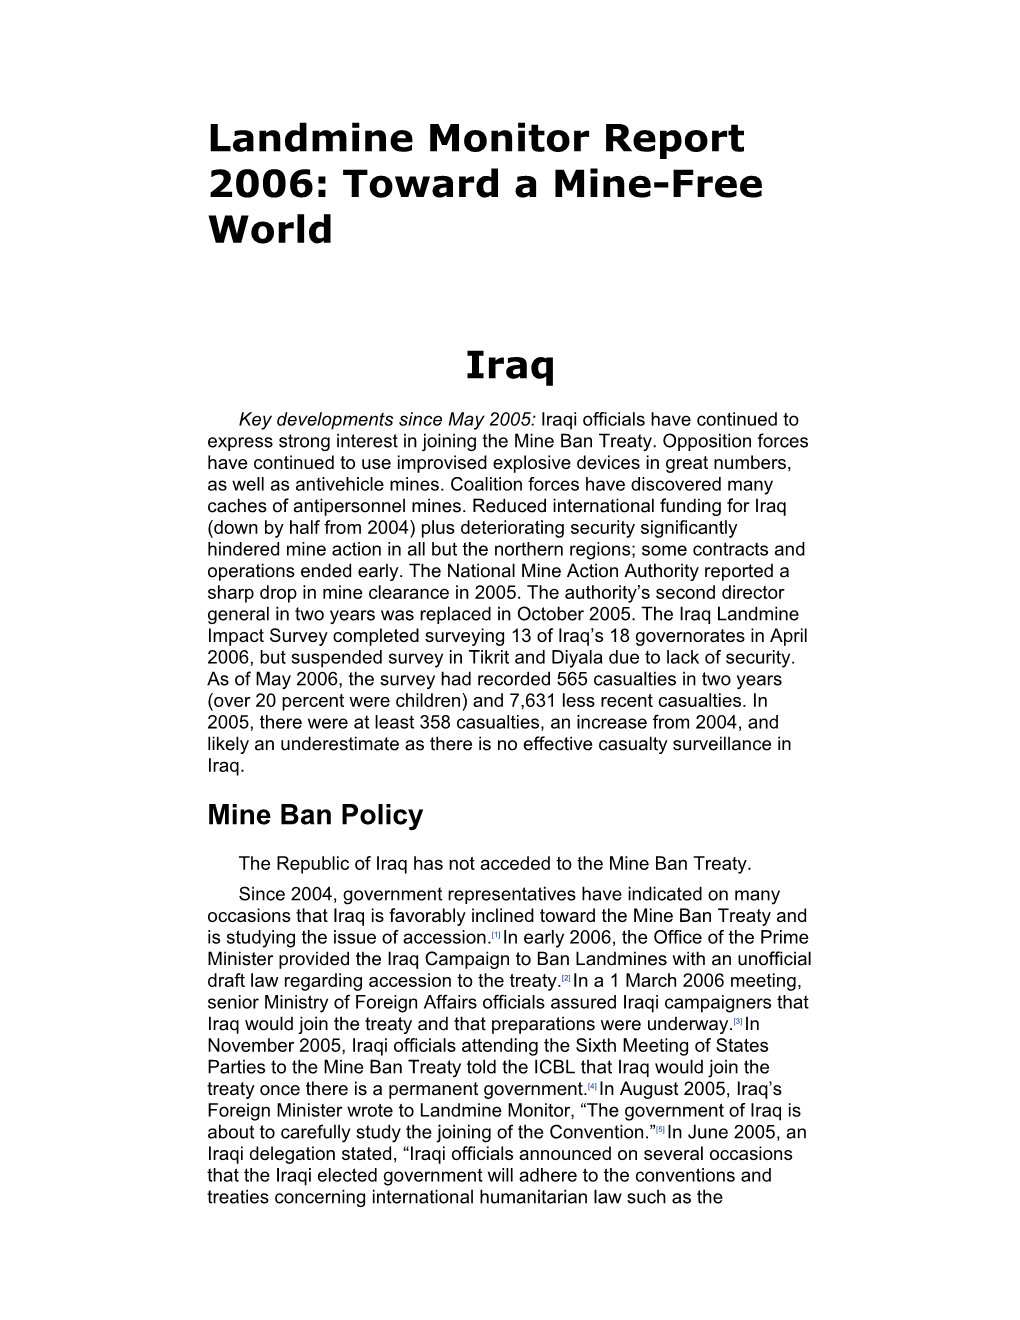 Toward a Mine-Free World Iraq